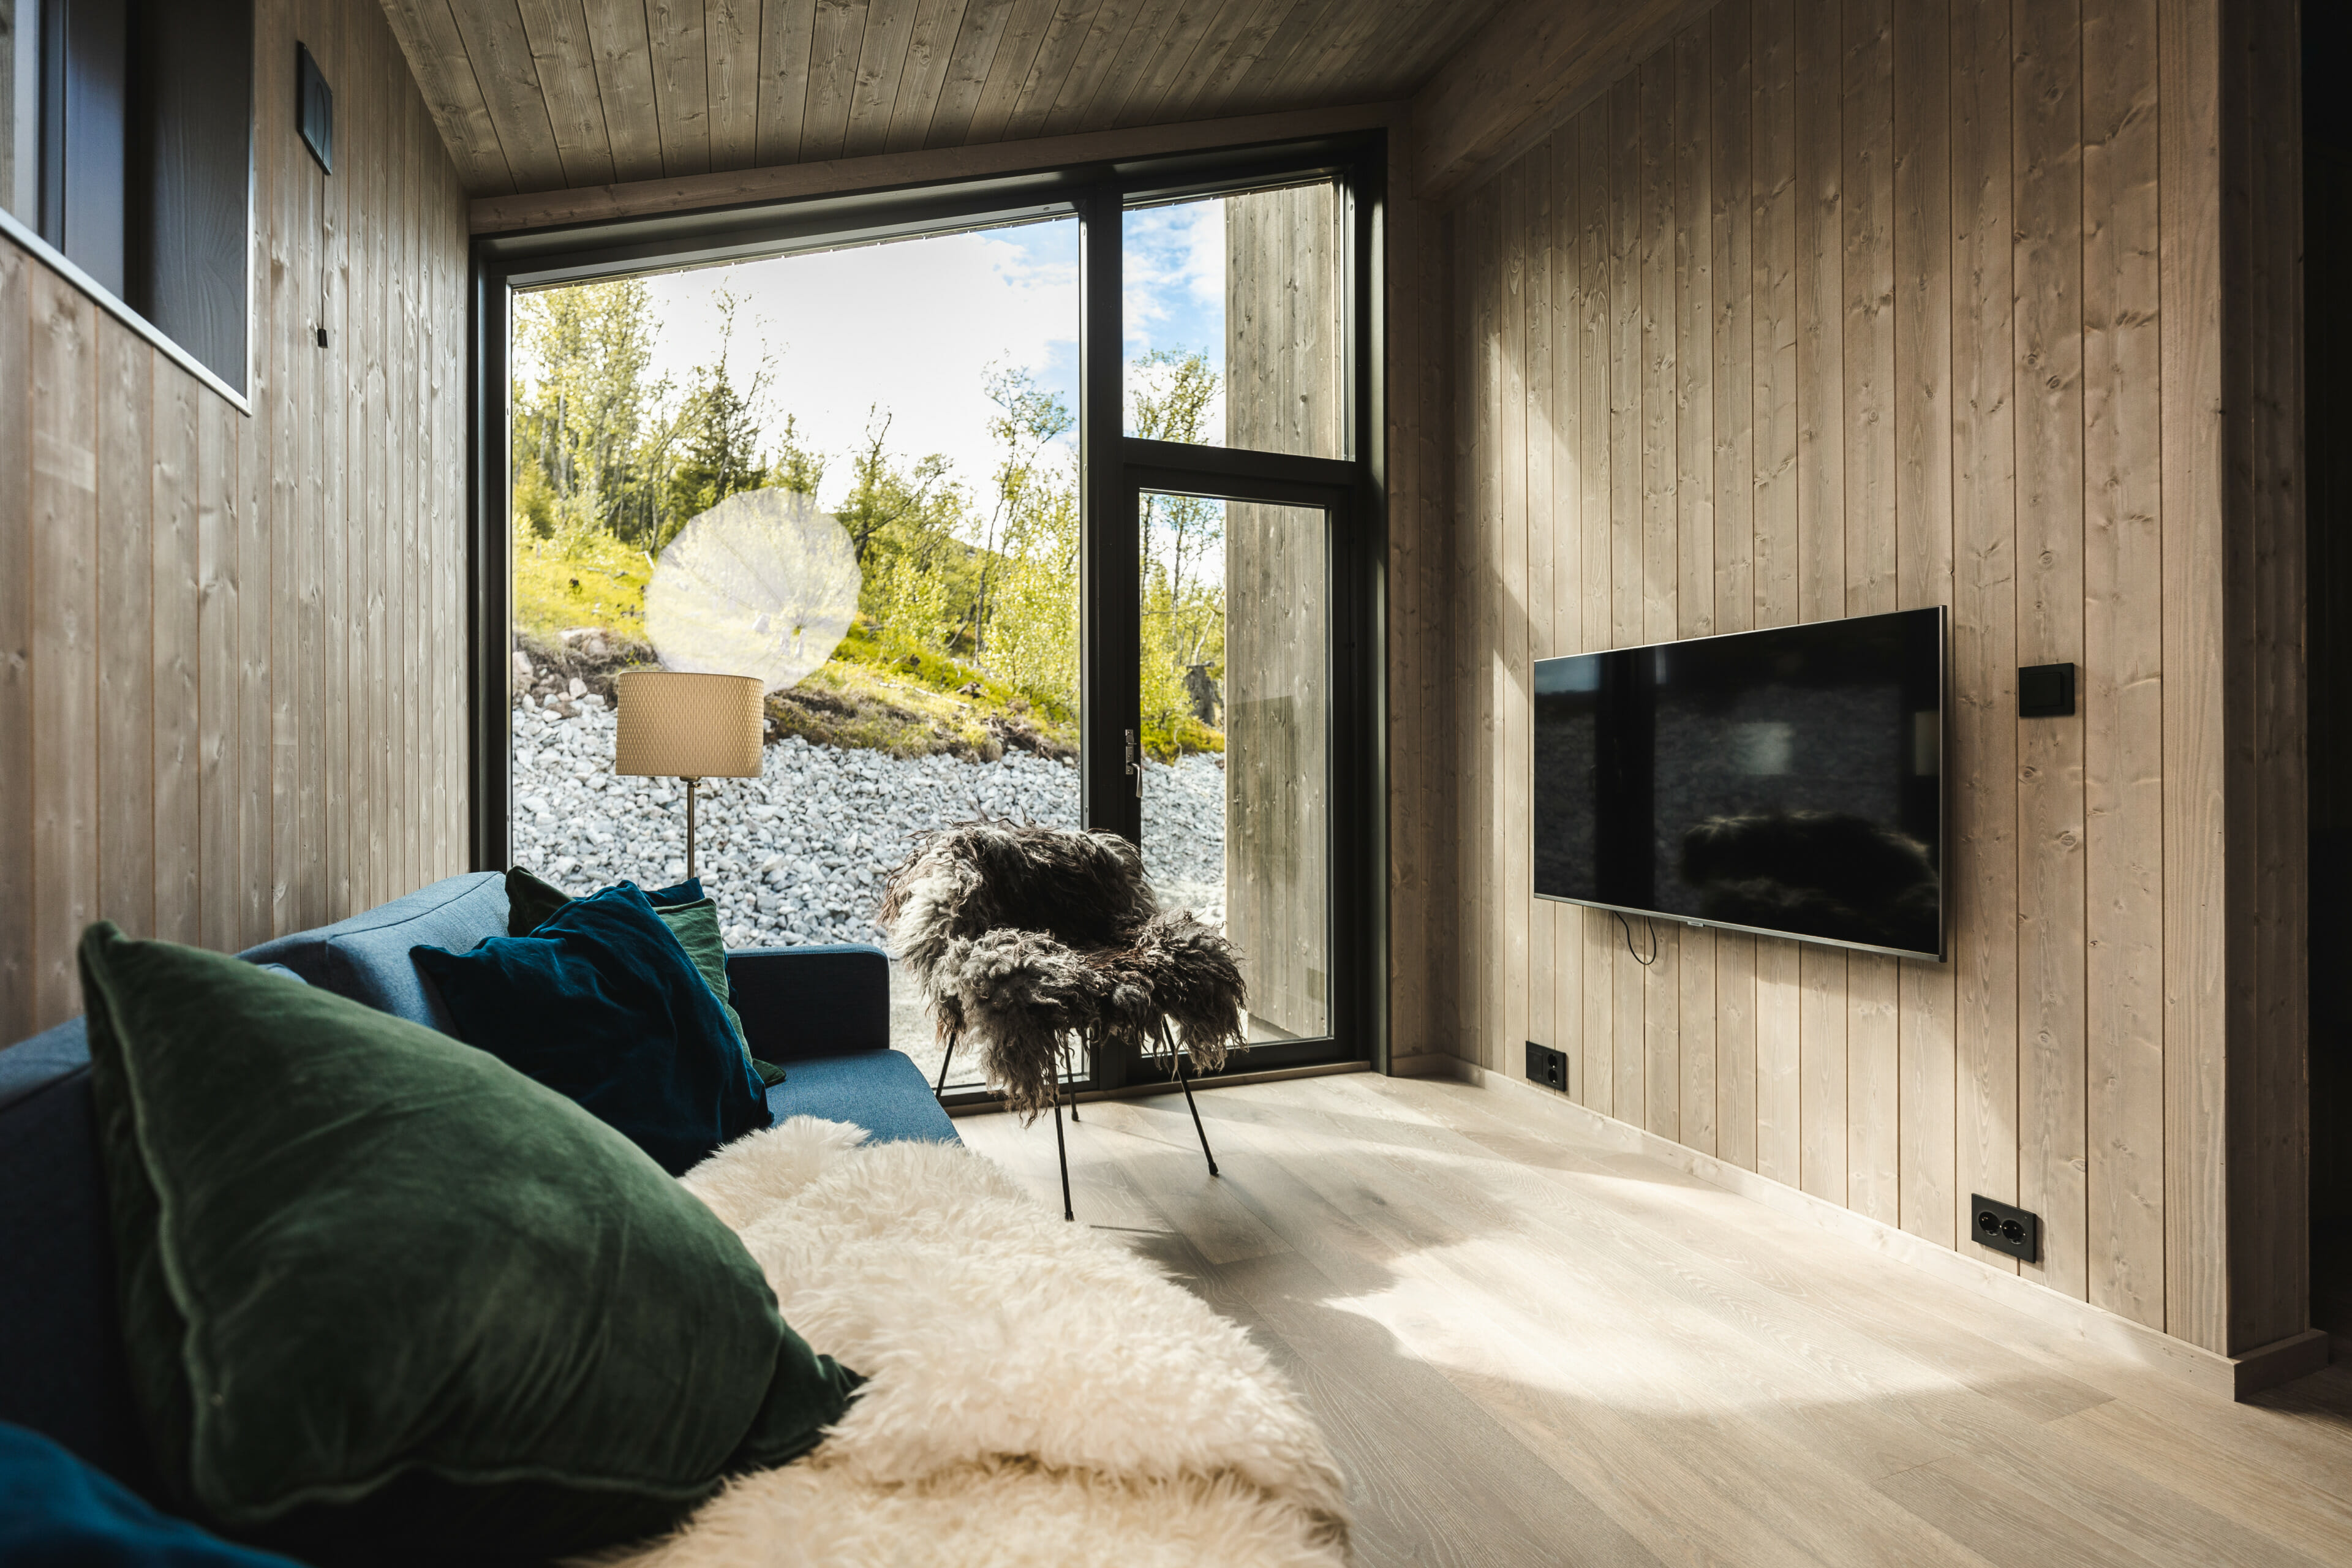 Interiørfoto fra stue i moderne hytte. Stort vindu og glassdør. Trepanel på veggene. Blå sofa med grønne og blå puter og vegghengt TV.